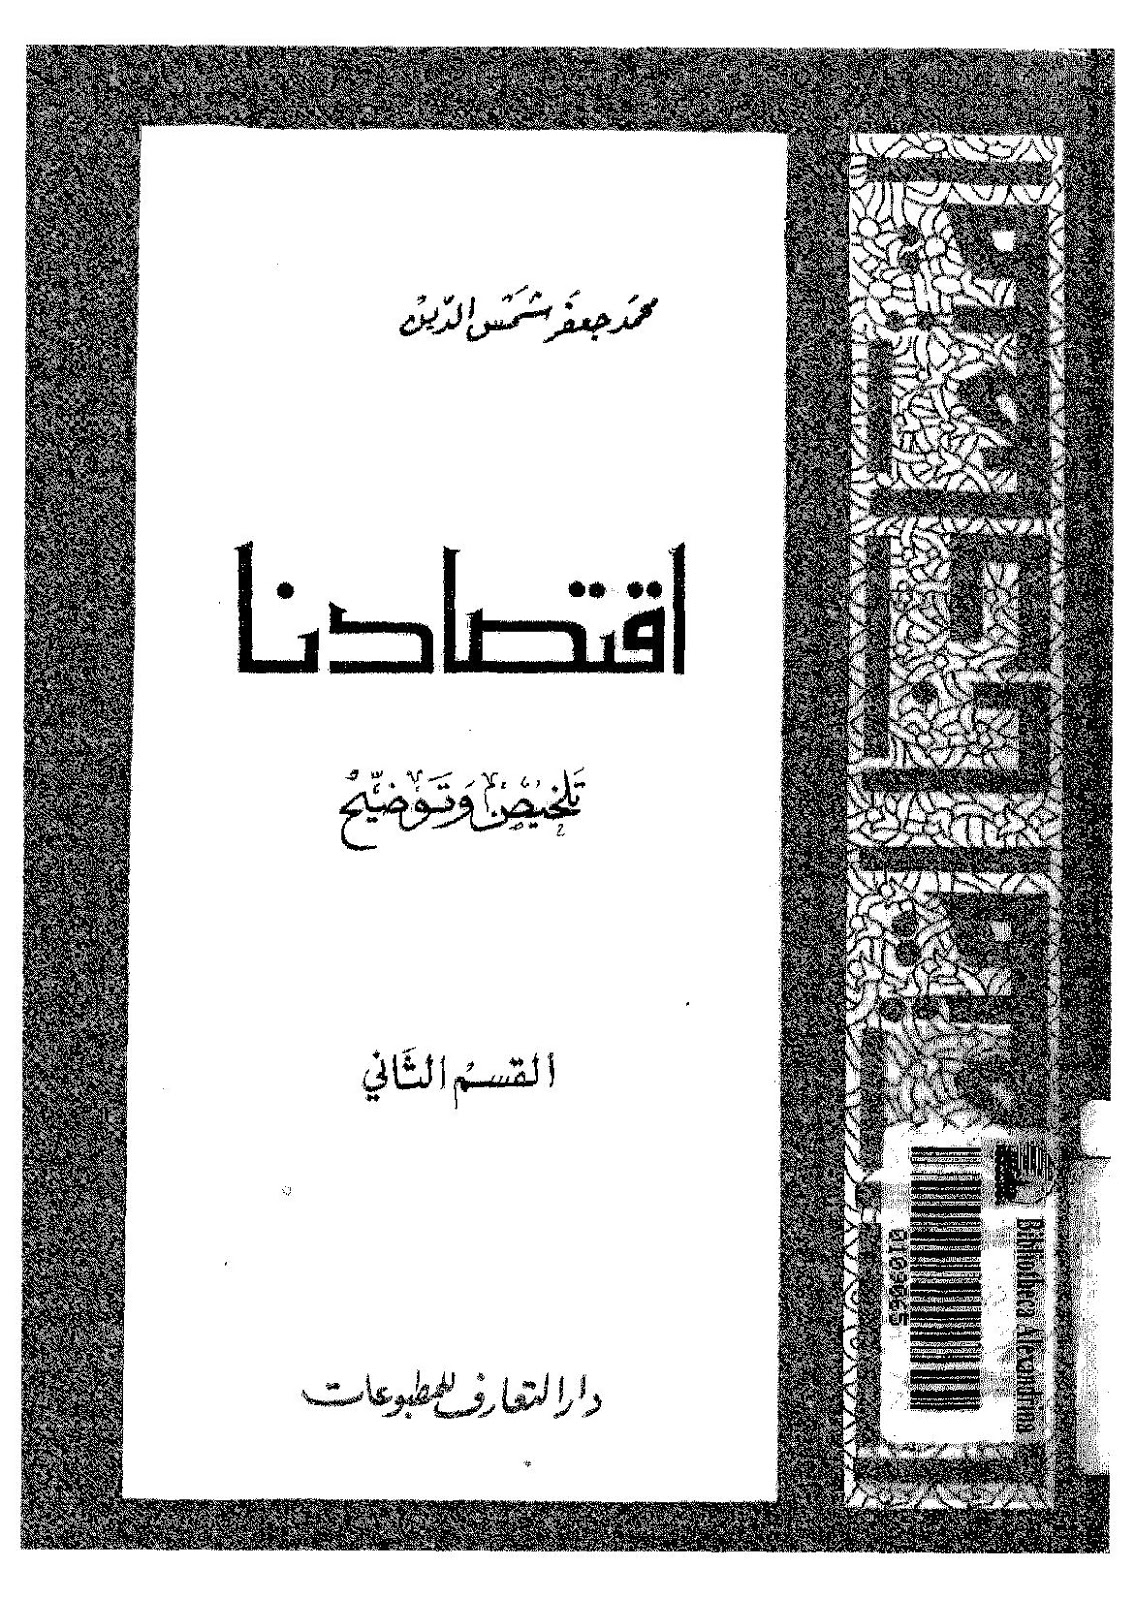 تحميل كتب حول الاقتصاد الإسلامي Pdf أكثر من ٢٠ كتاب